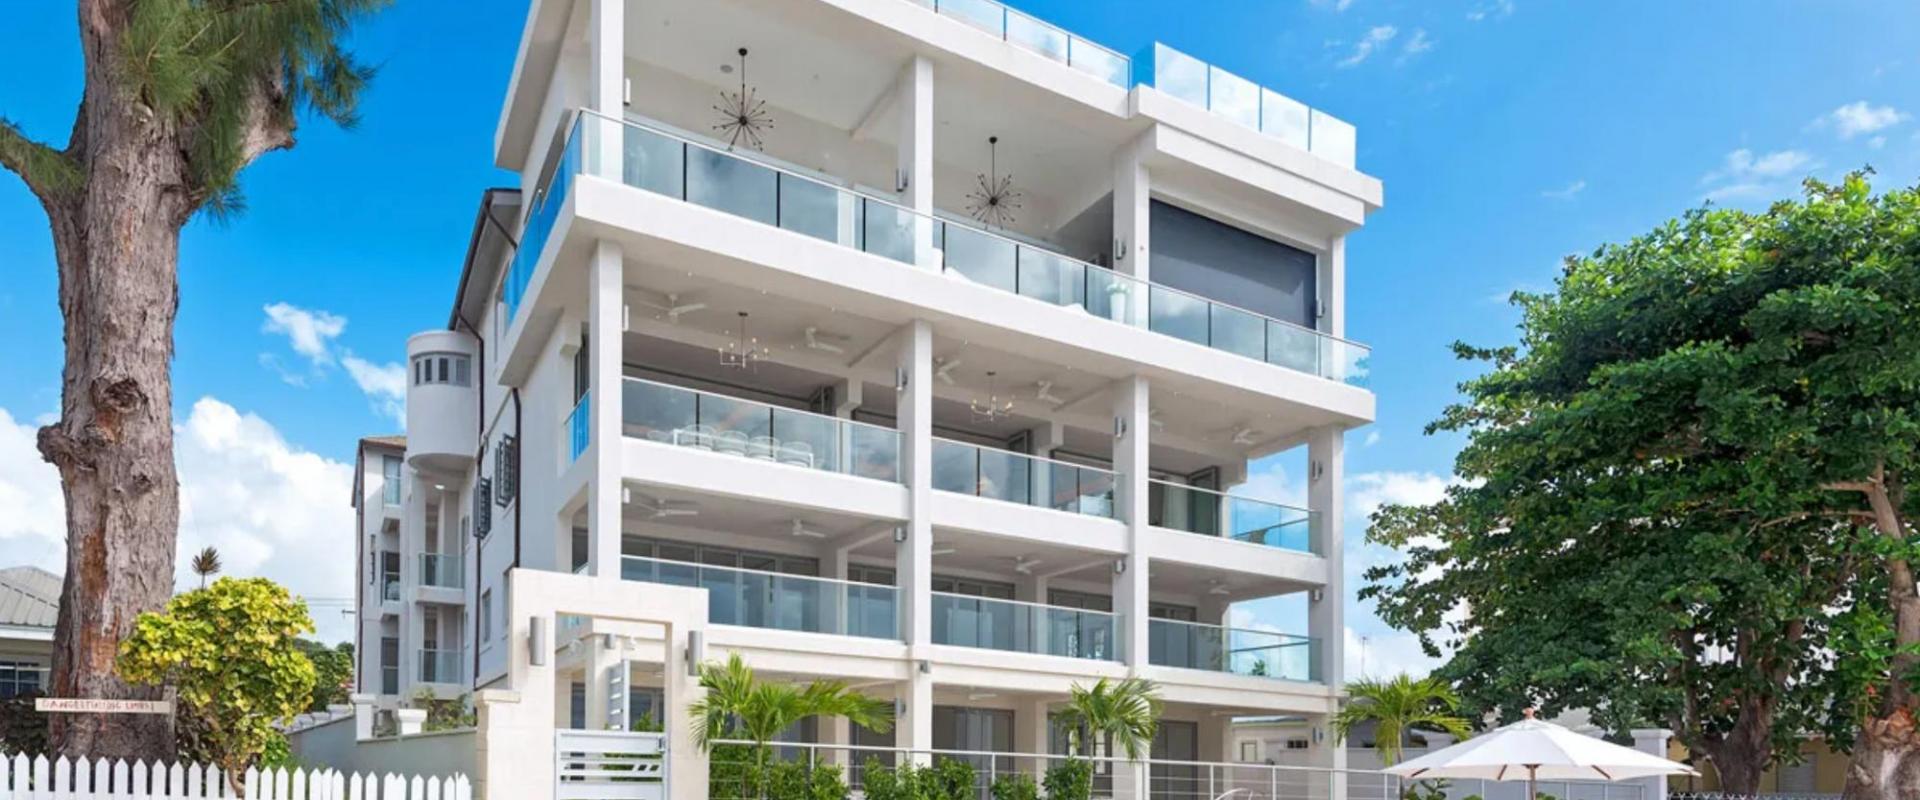 The Villa at St. James Condominium/Apartment For Rent in Barbados